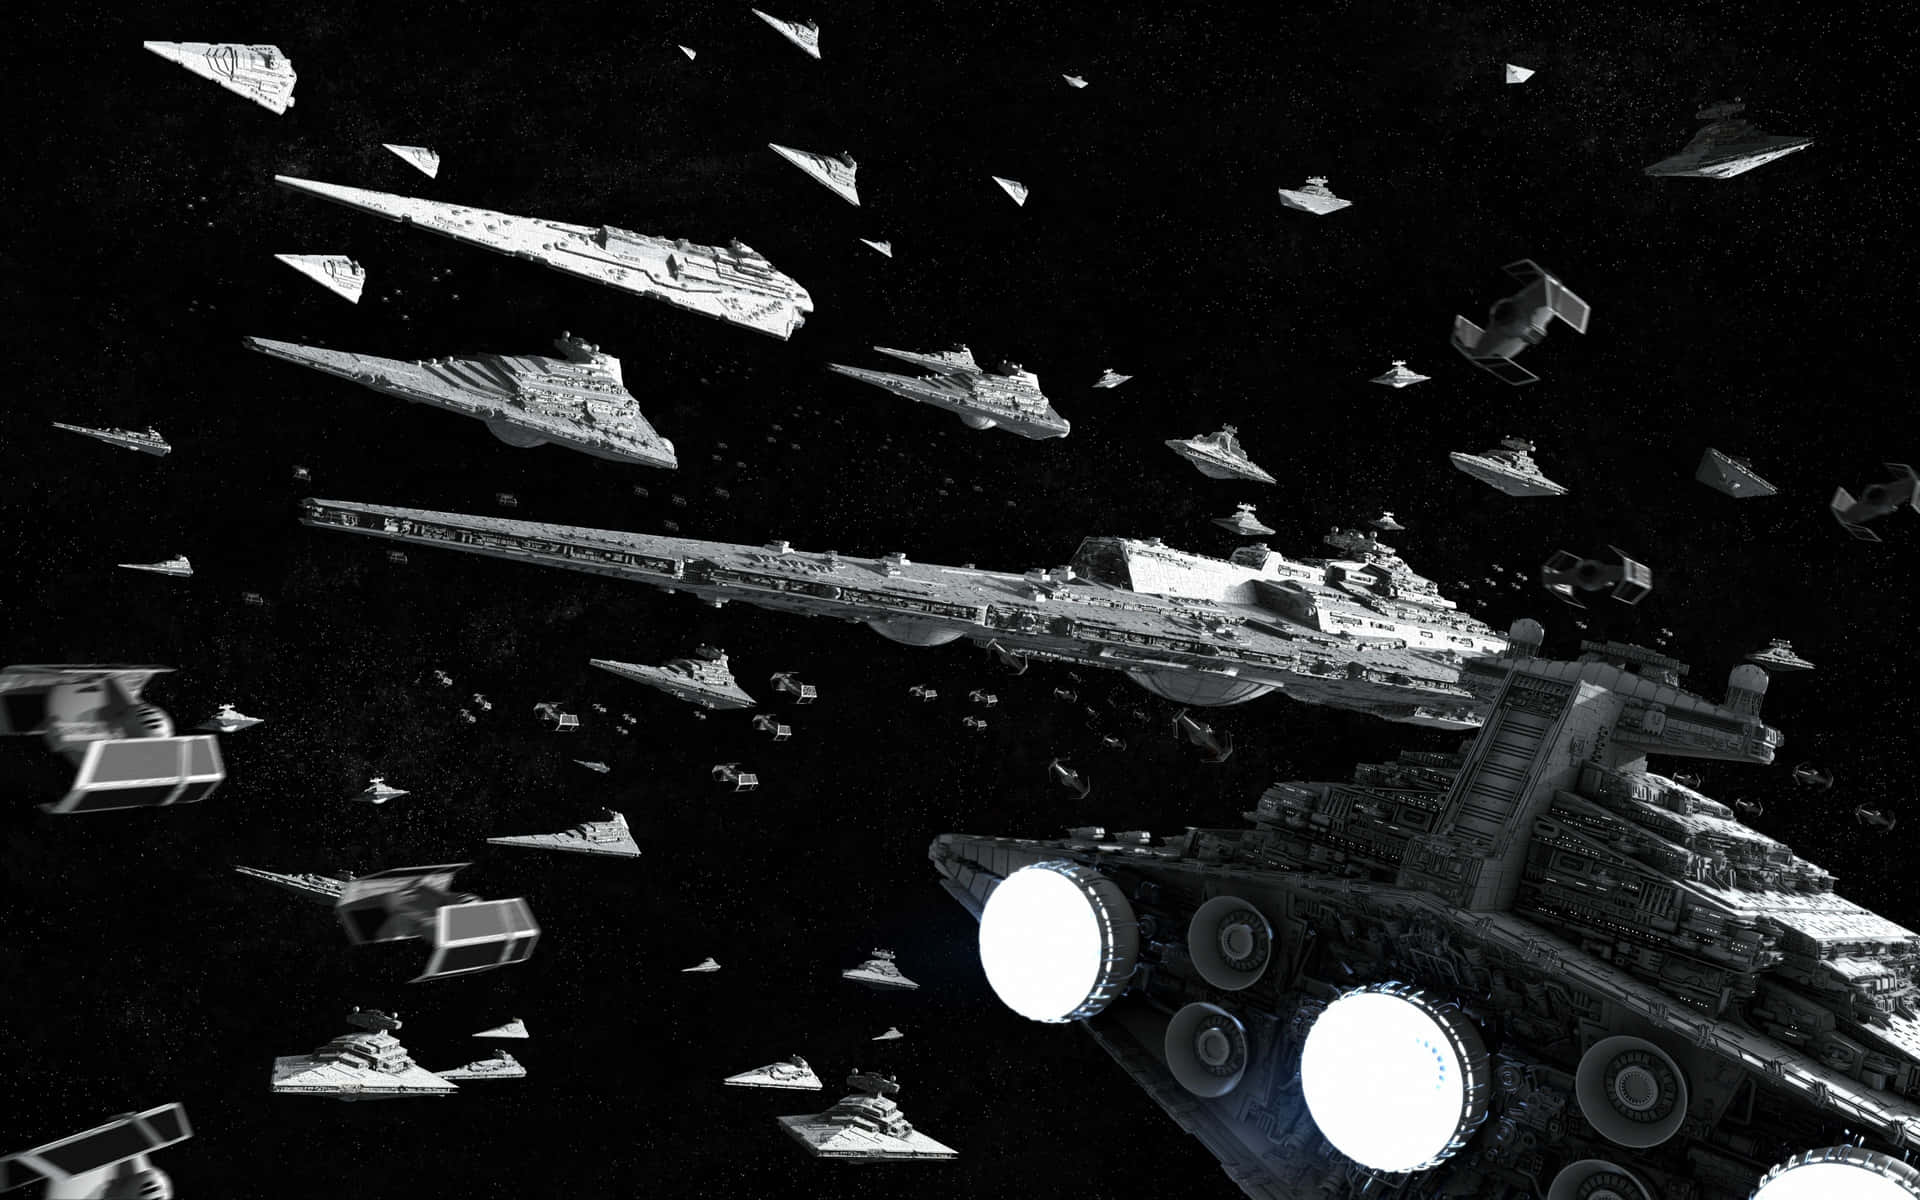 Star Wars Space Battle Fleet Formation Wallpaper